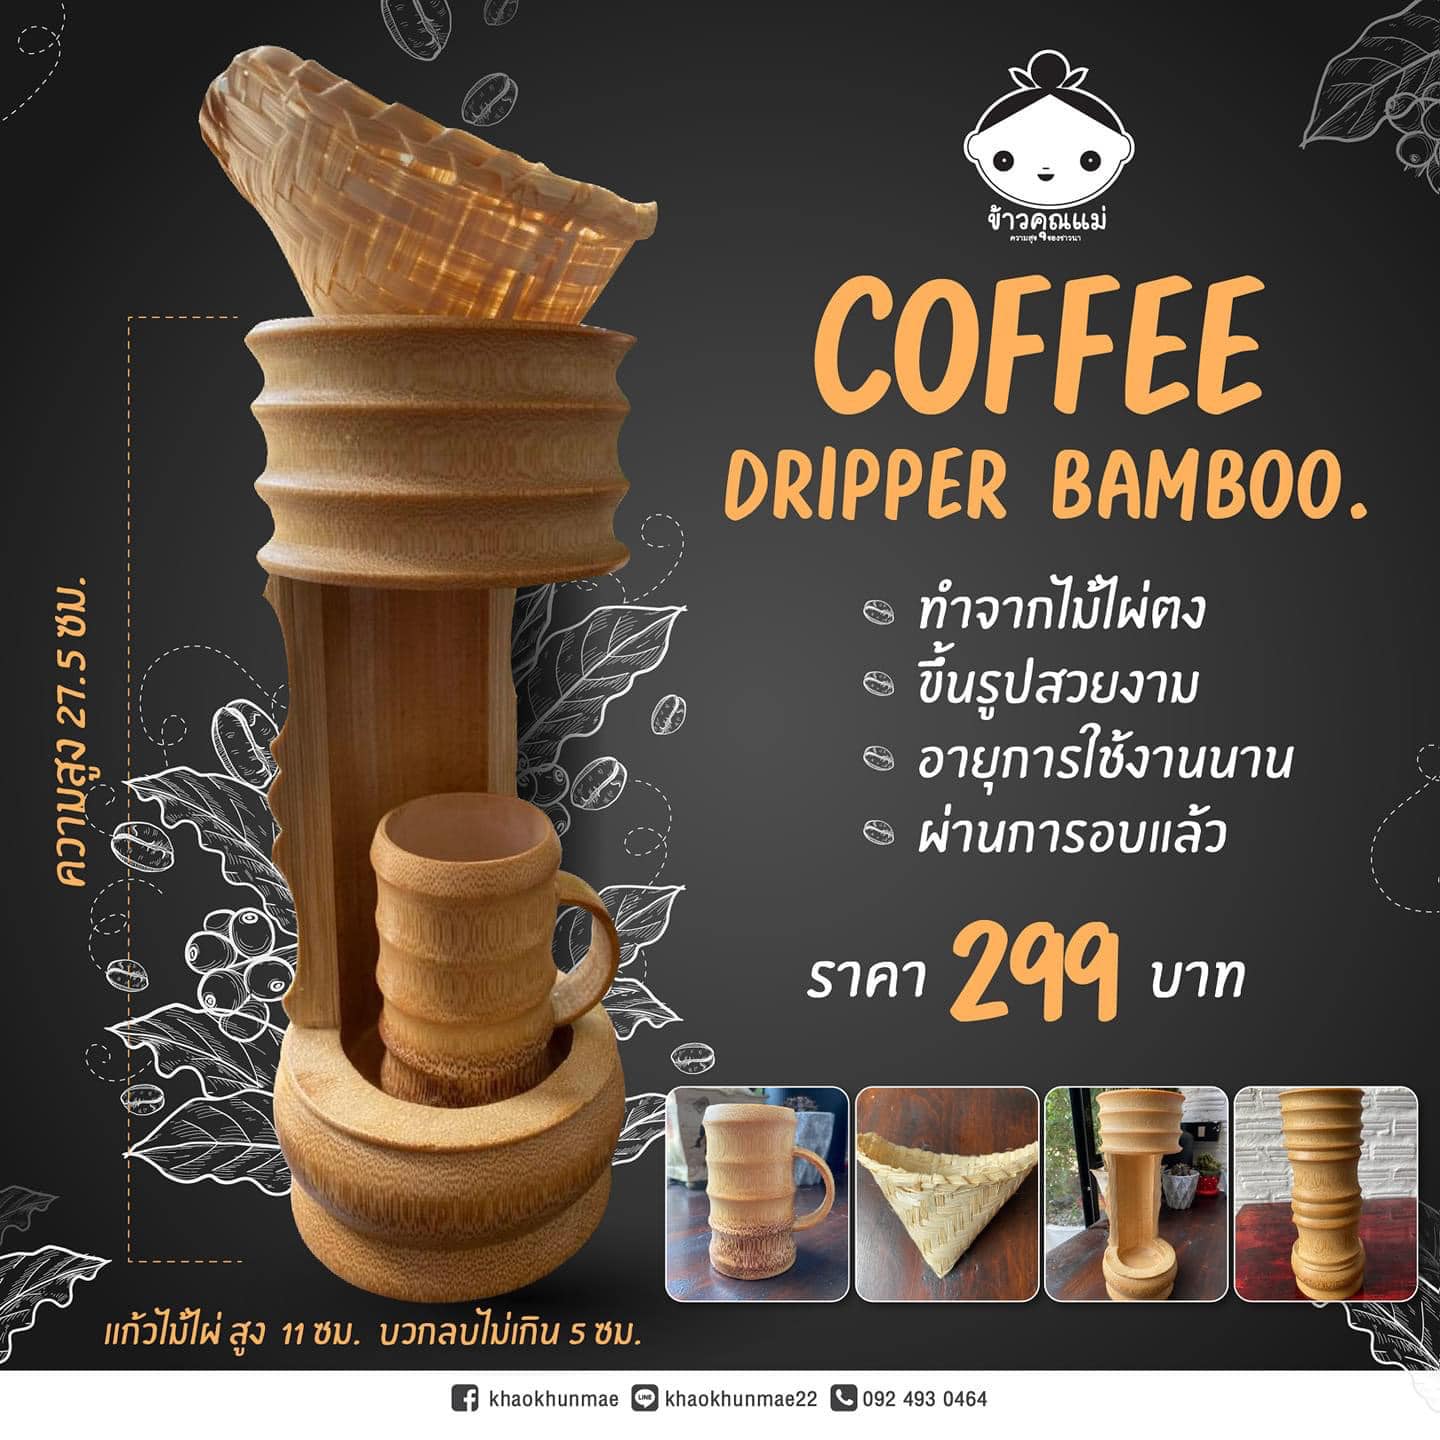 ชุดดริปกาแฟไม้ไผ่ ﻿Coffee Dripper Bamboo แบบใหม่ ไซส์ใหม่ใหญ่กว่าเดิม